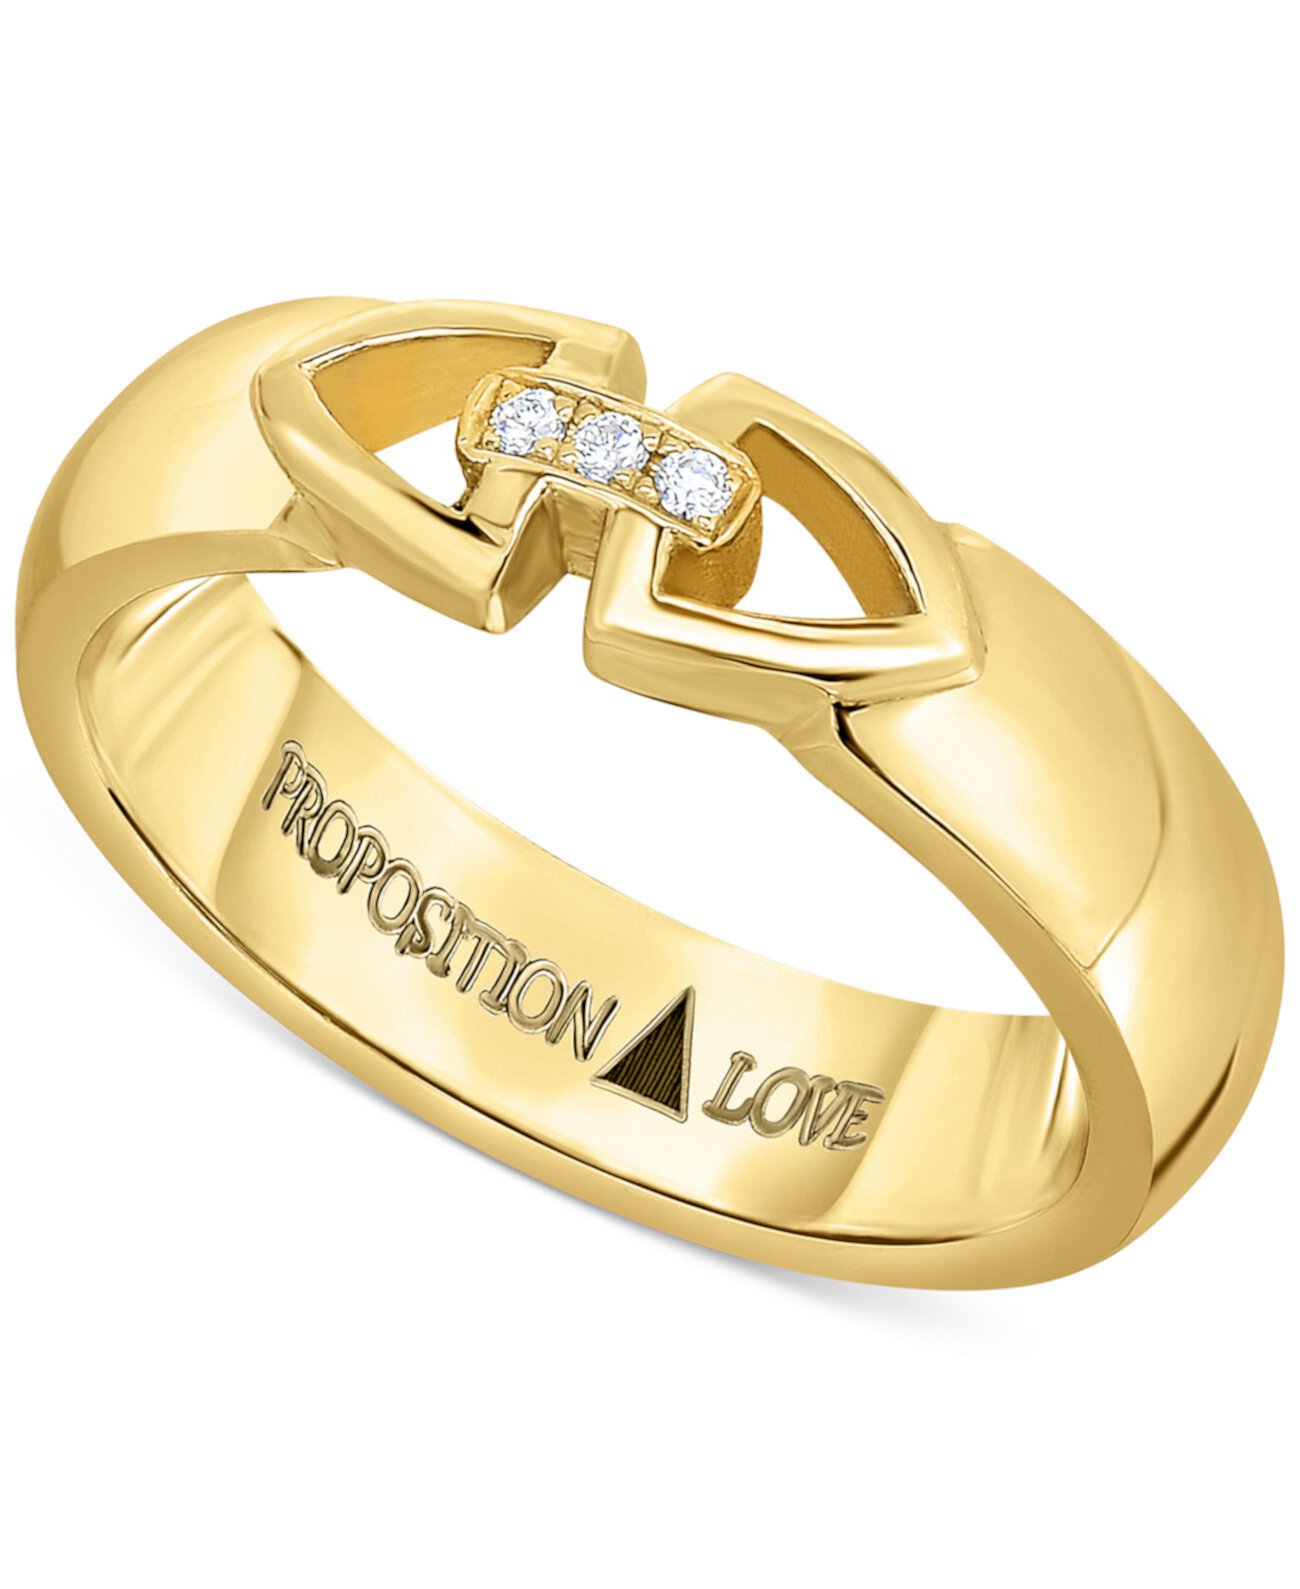 Обручальное кольцо унисекс с бриллиантовым треугольником, золото 585 пробы (1/10 карата) Proposition Love